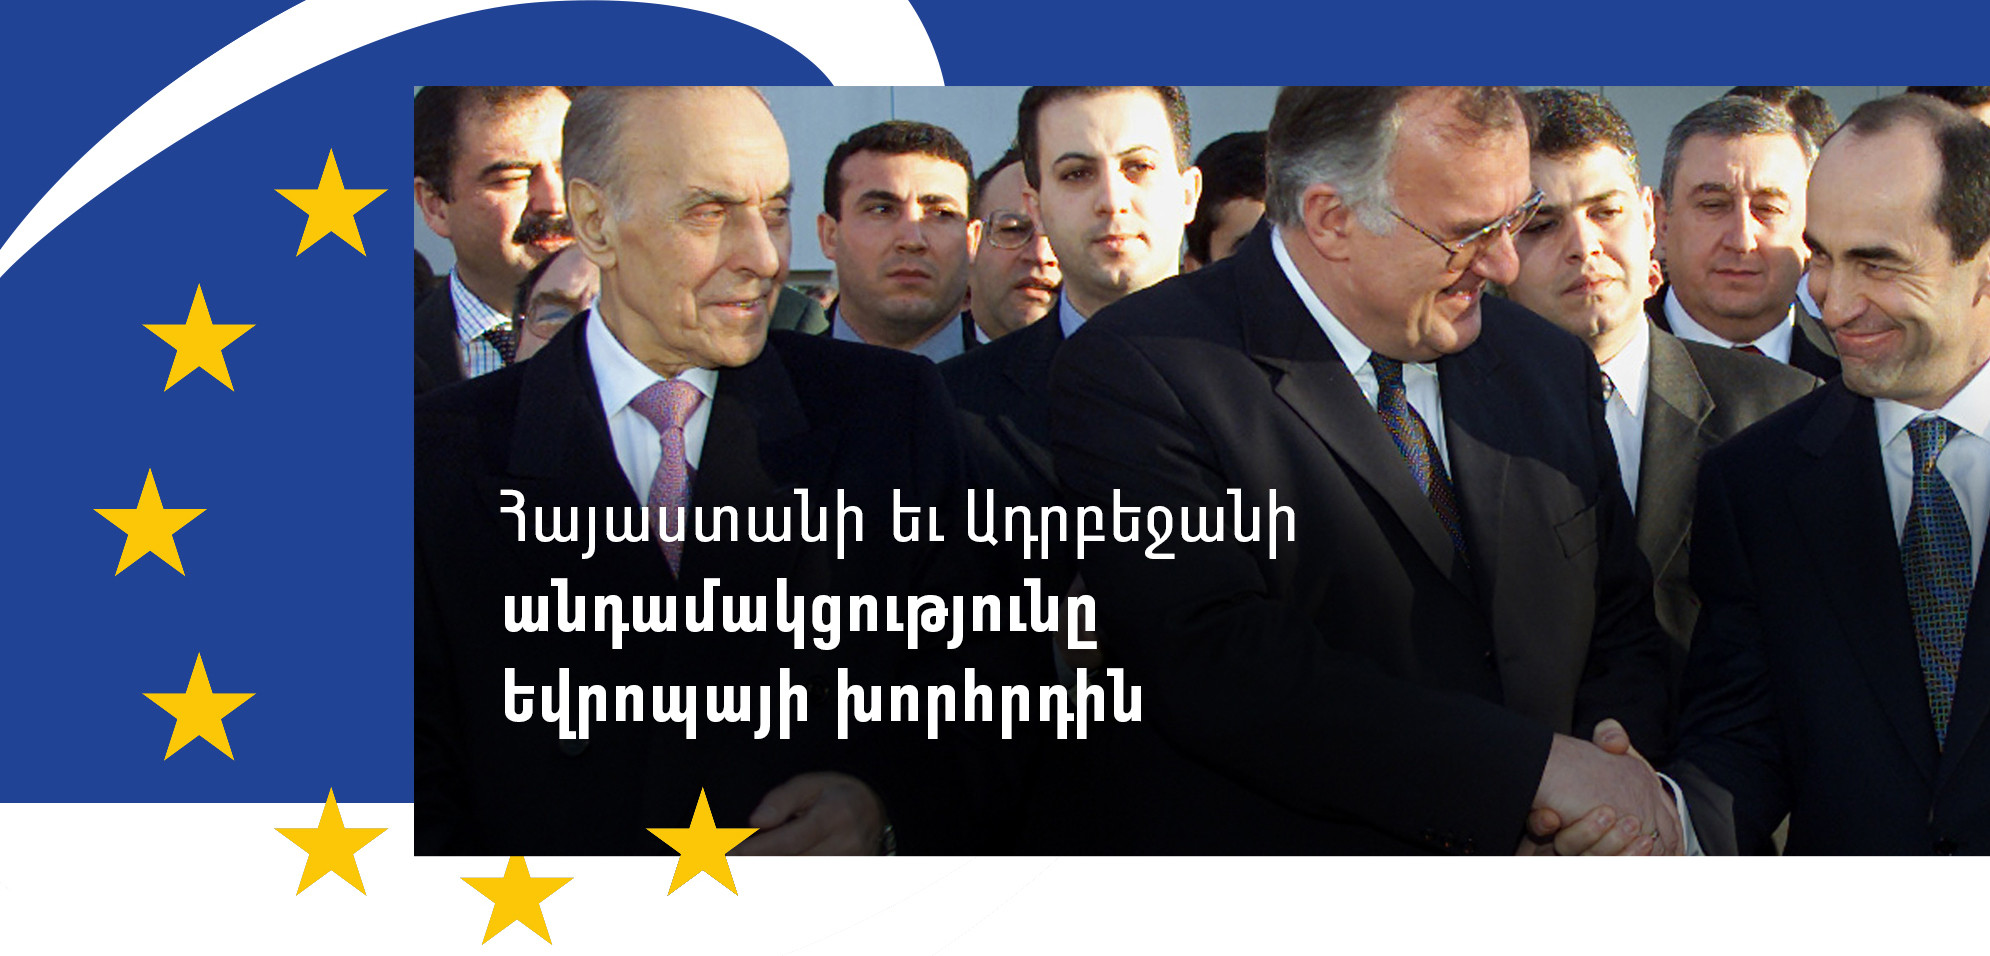 Հայաստանի եւ Ադրբեջանի անդամակցությունը Եվրոպայի խորհրդին